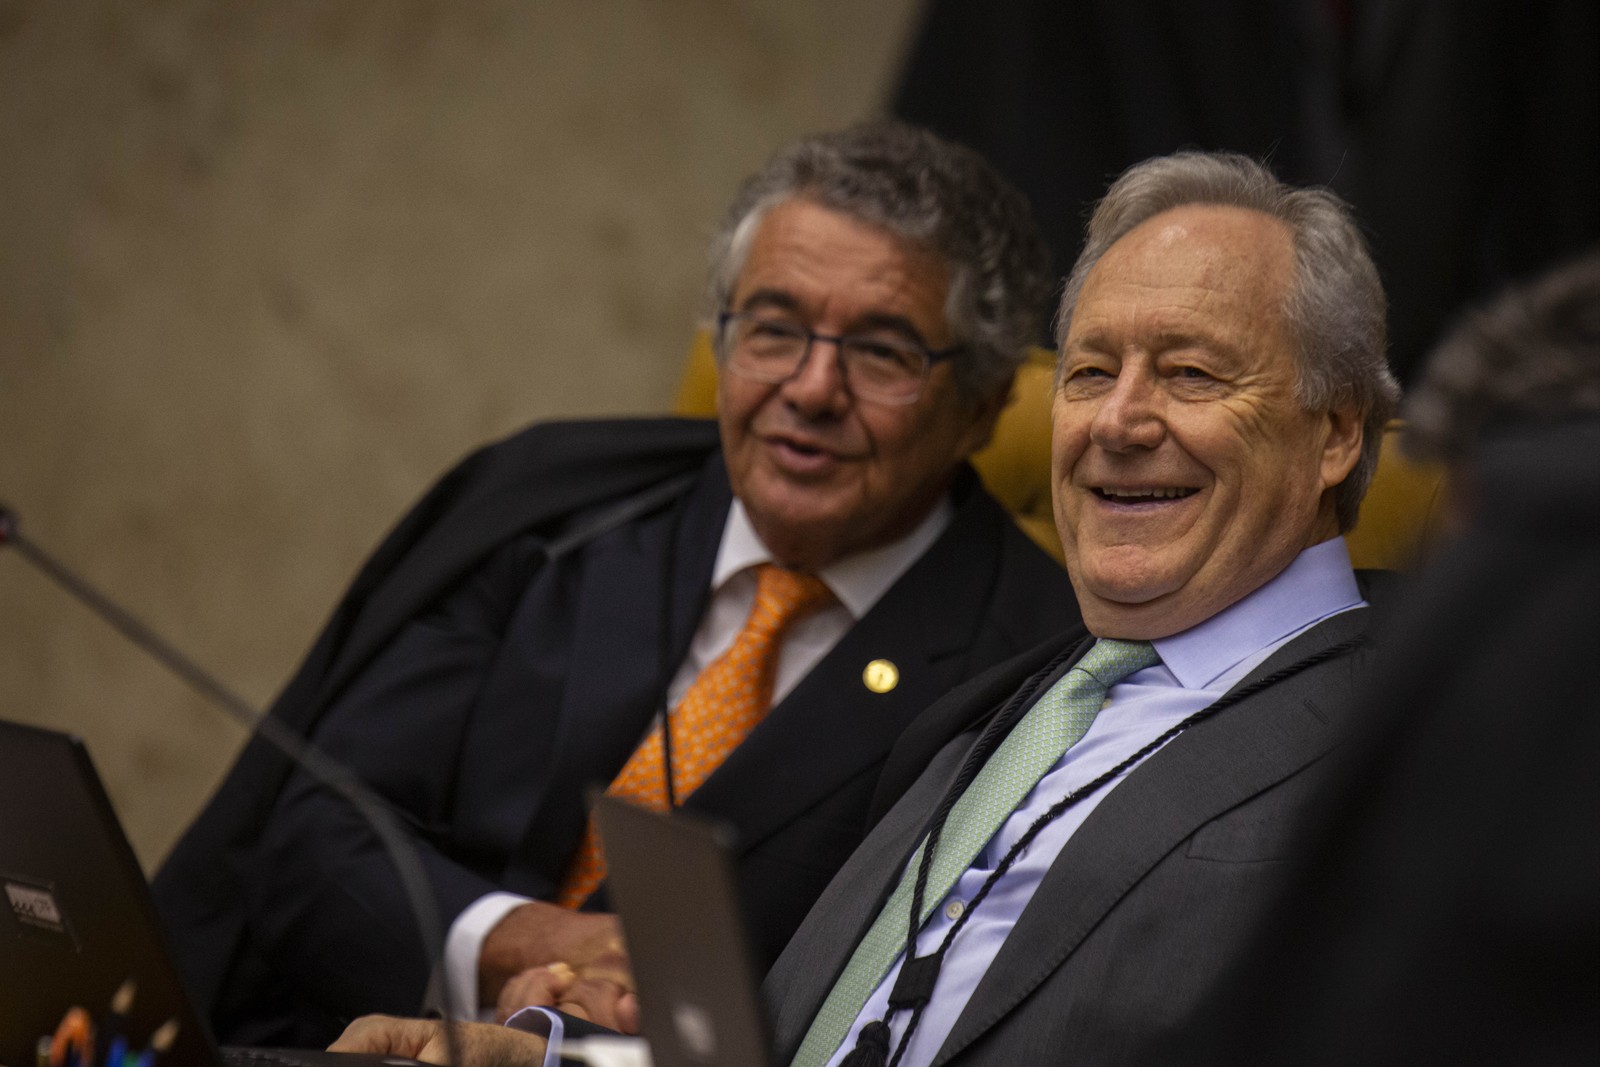 Em 2019, os ministros Marco Aurélio Mello e Ricardo Lewandowski no Supremo Tribunal Federal (STF) retomando o julgamento das ações que discutem a prisão em segunda instância. — Foto: Daniel Marenco